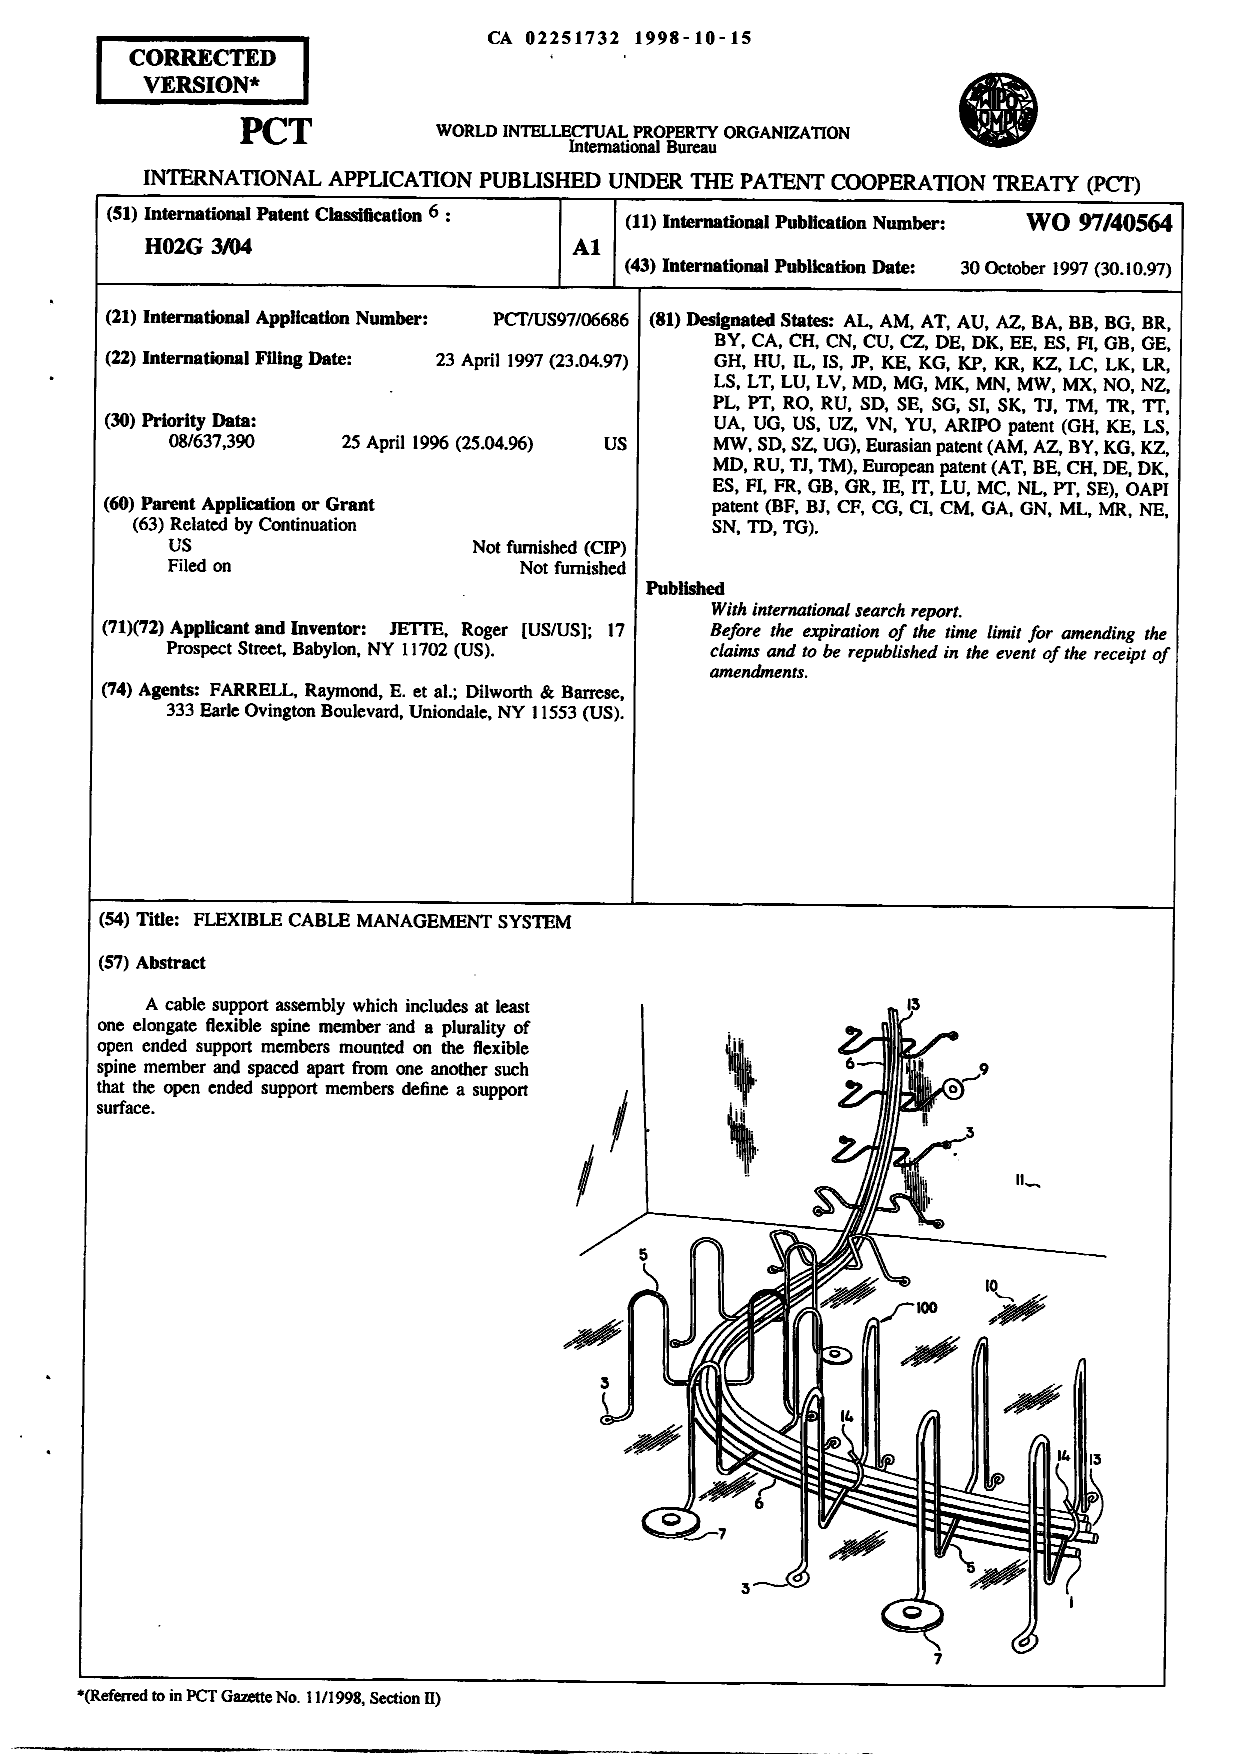 Document de brevet canadien 2251732. Abrégé 19981015. Image 1 de 1